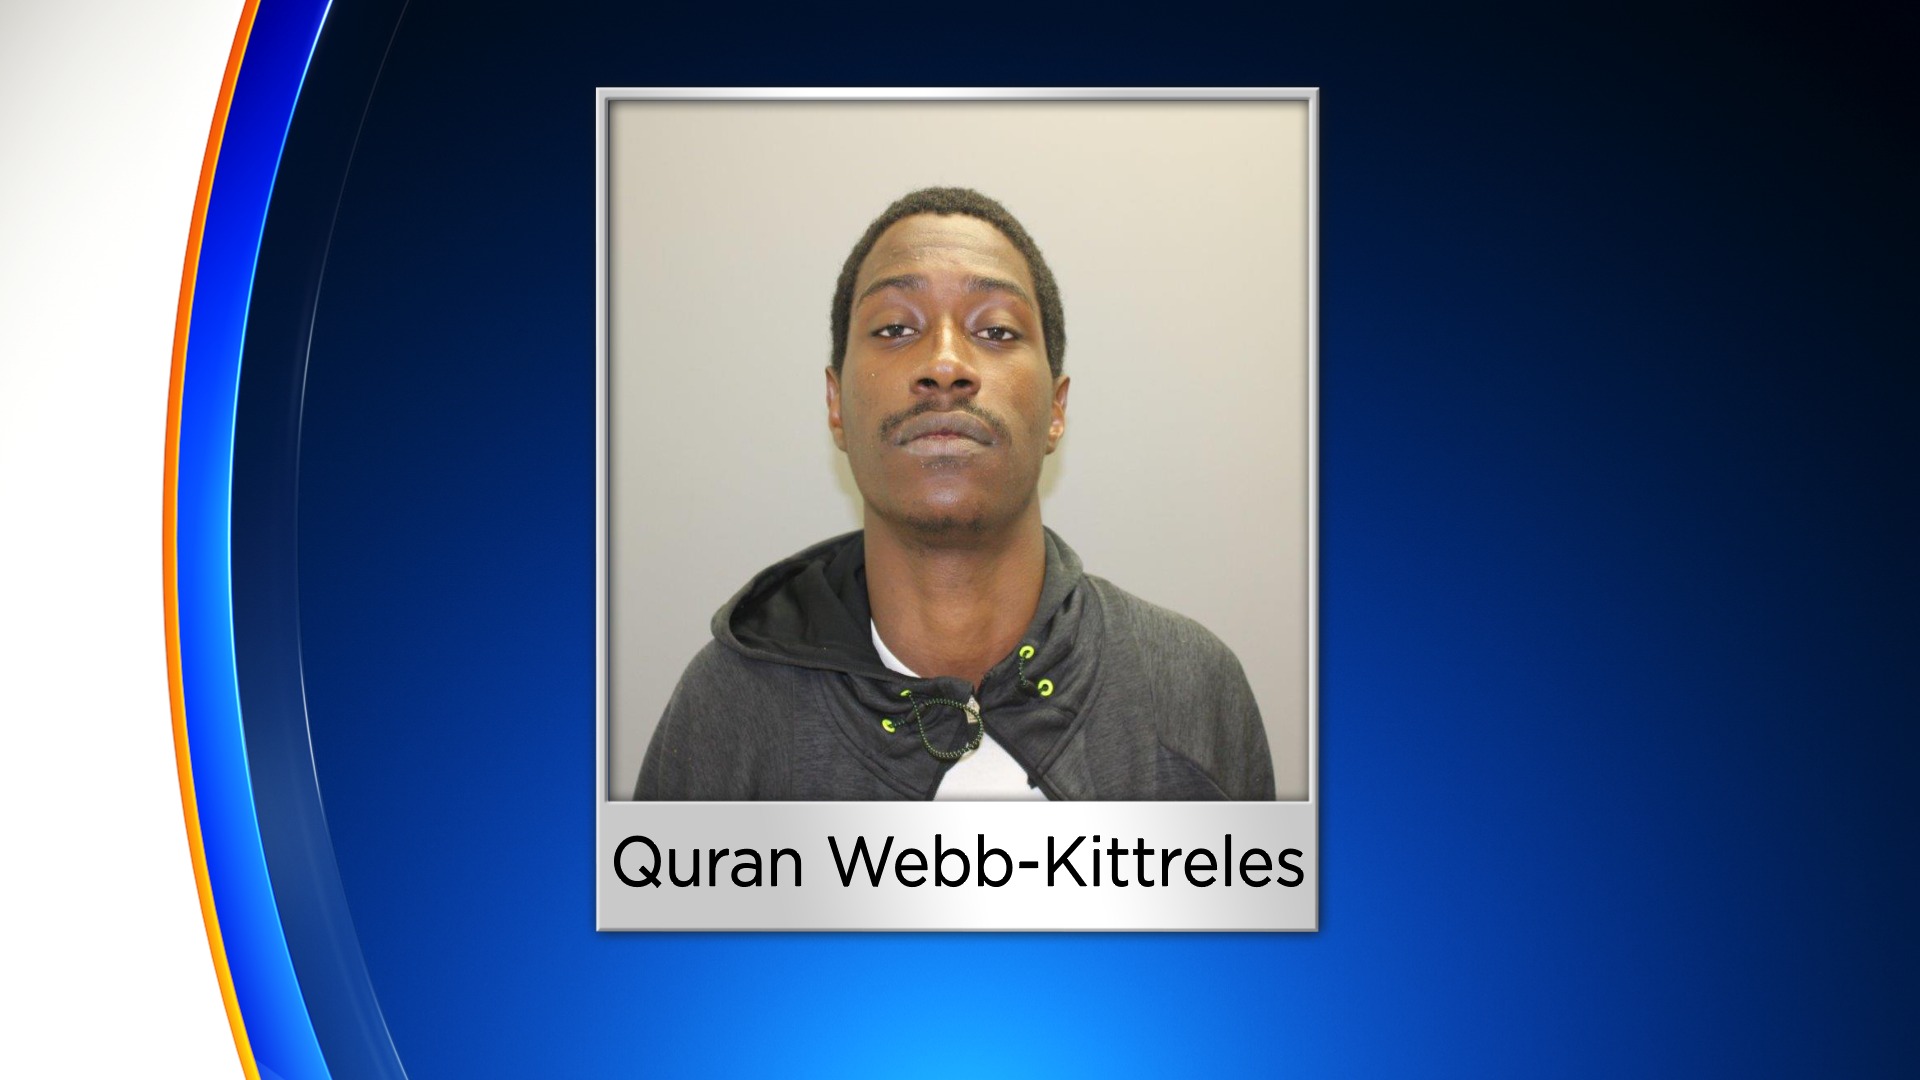 Quran Webb-Kittreles